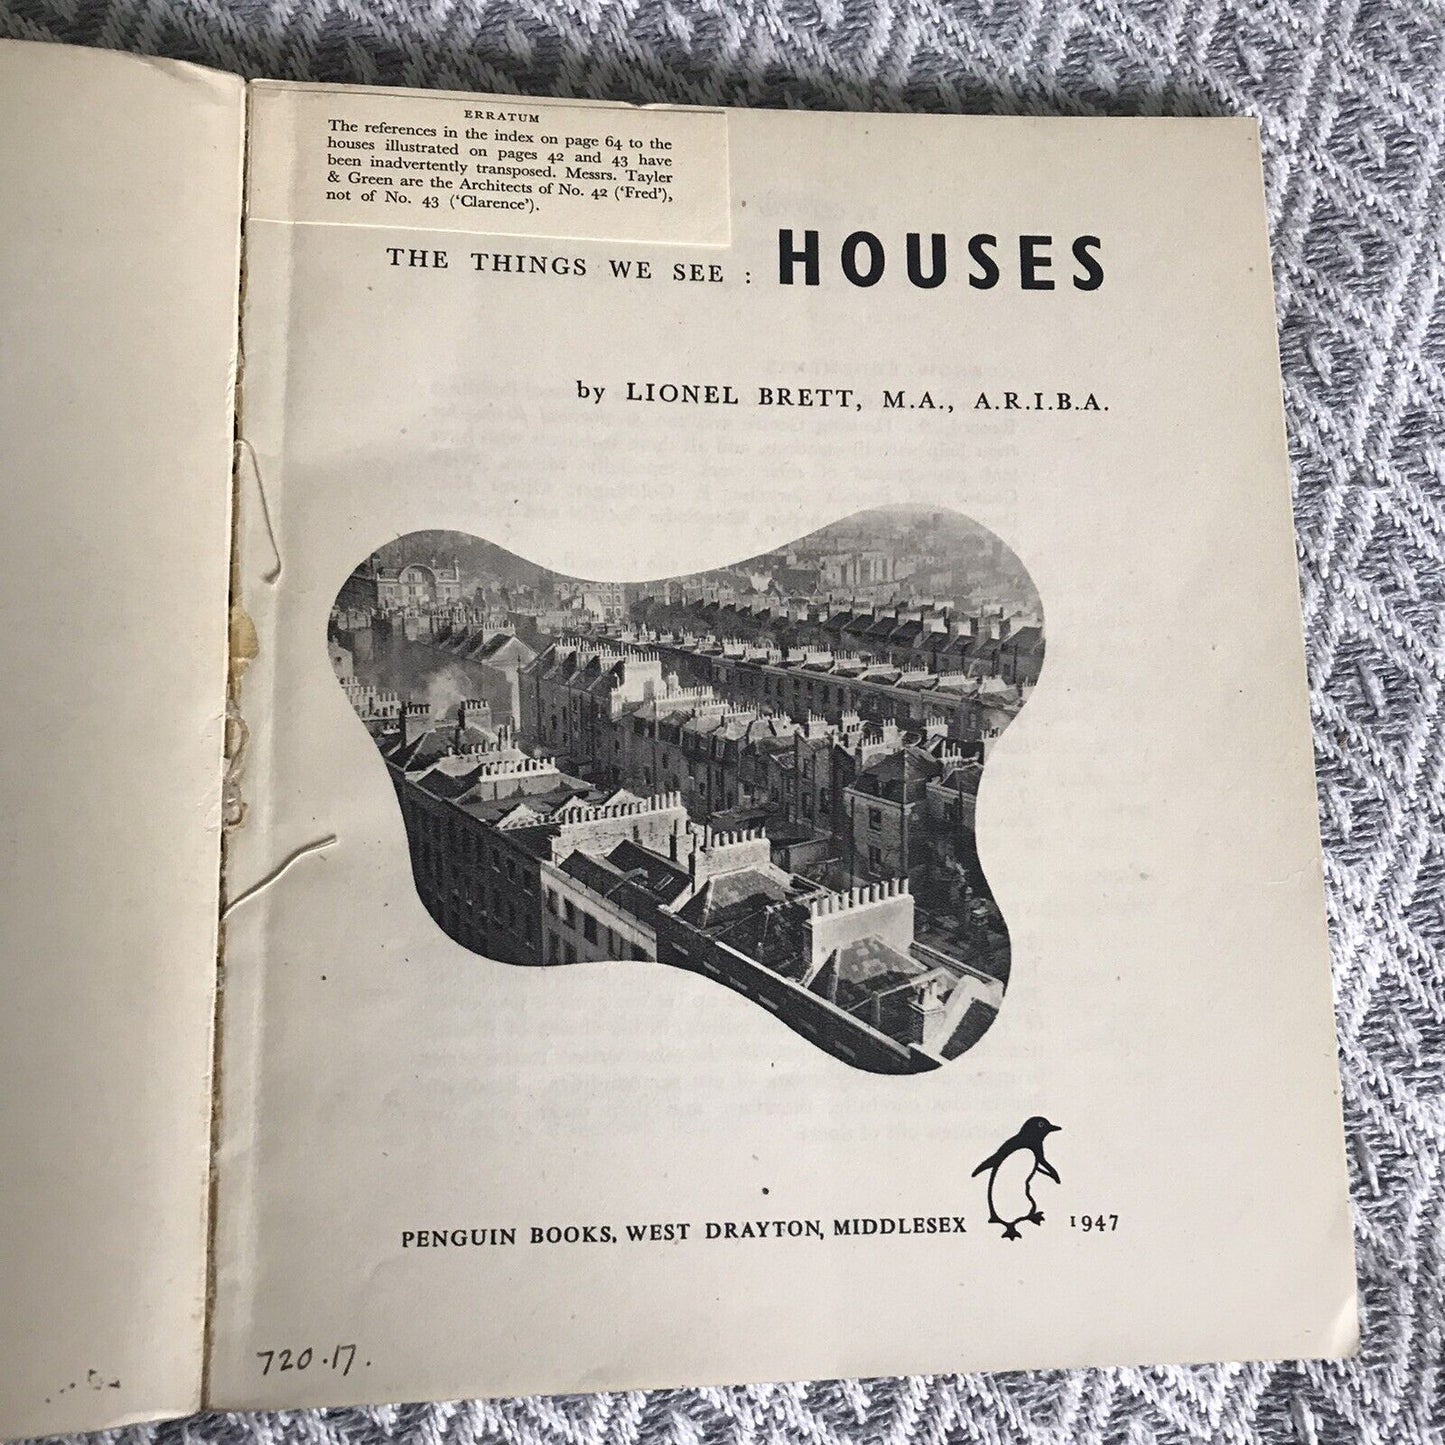 1947*1st* The Things We See No 2 Houses - Lionel Brett (Penguin Books) Honeyburn Books (UK)